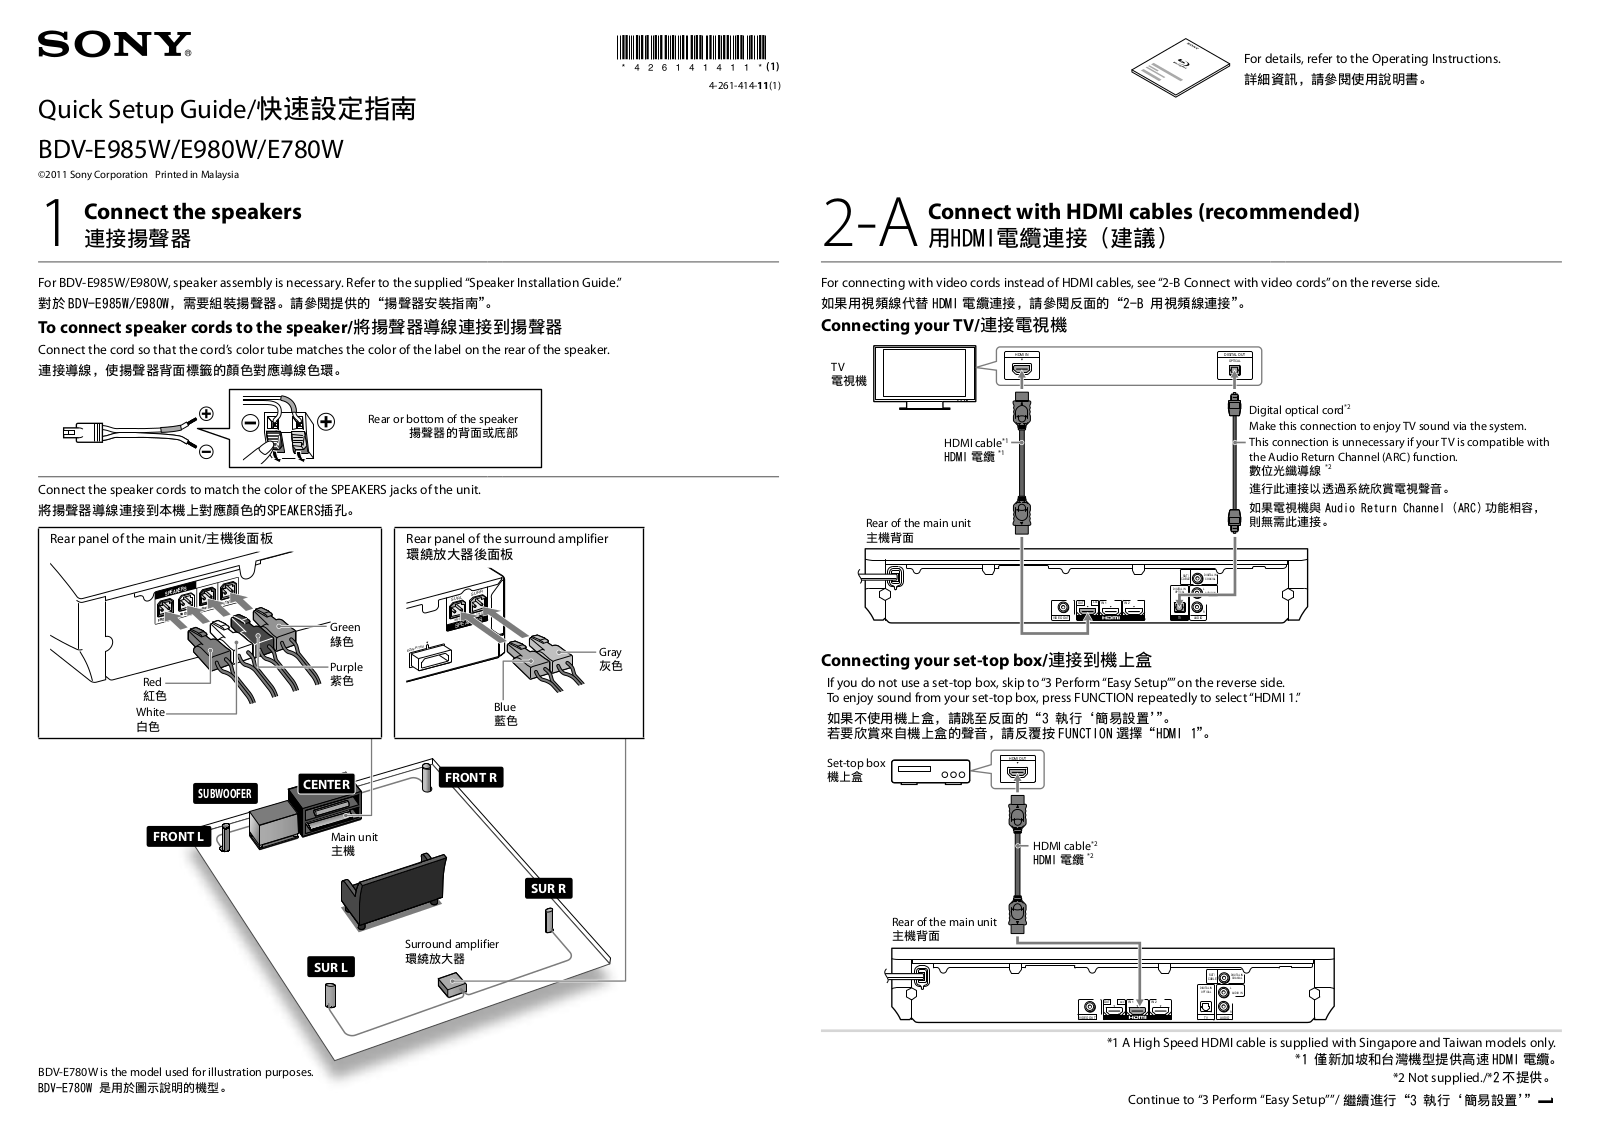 Sony BDV-E985W, BDV-E980W, BDV-E780W Quick setup guide